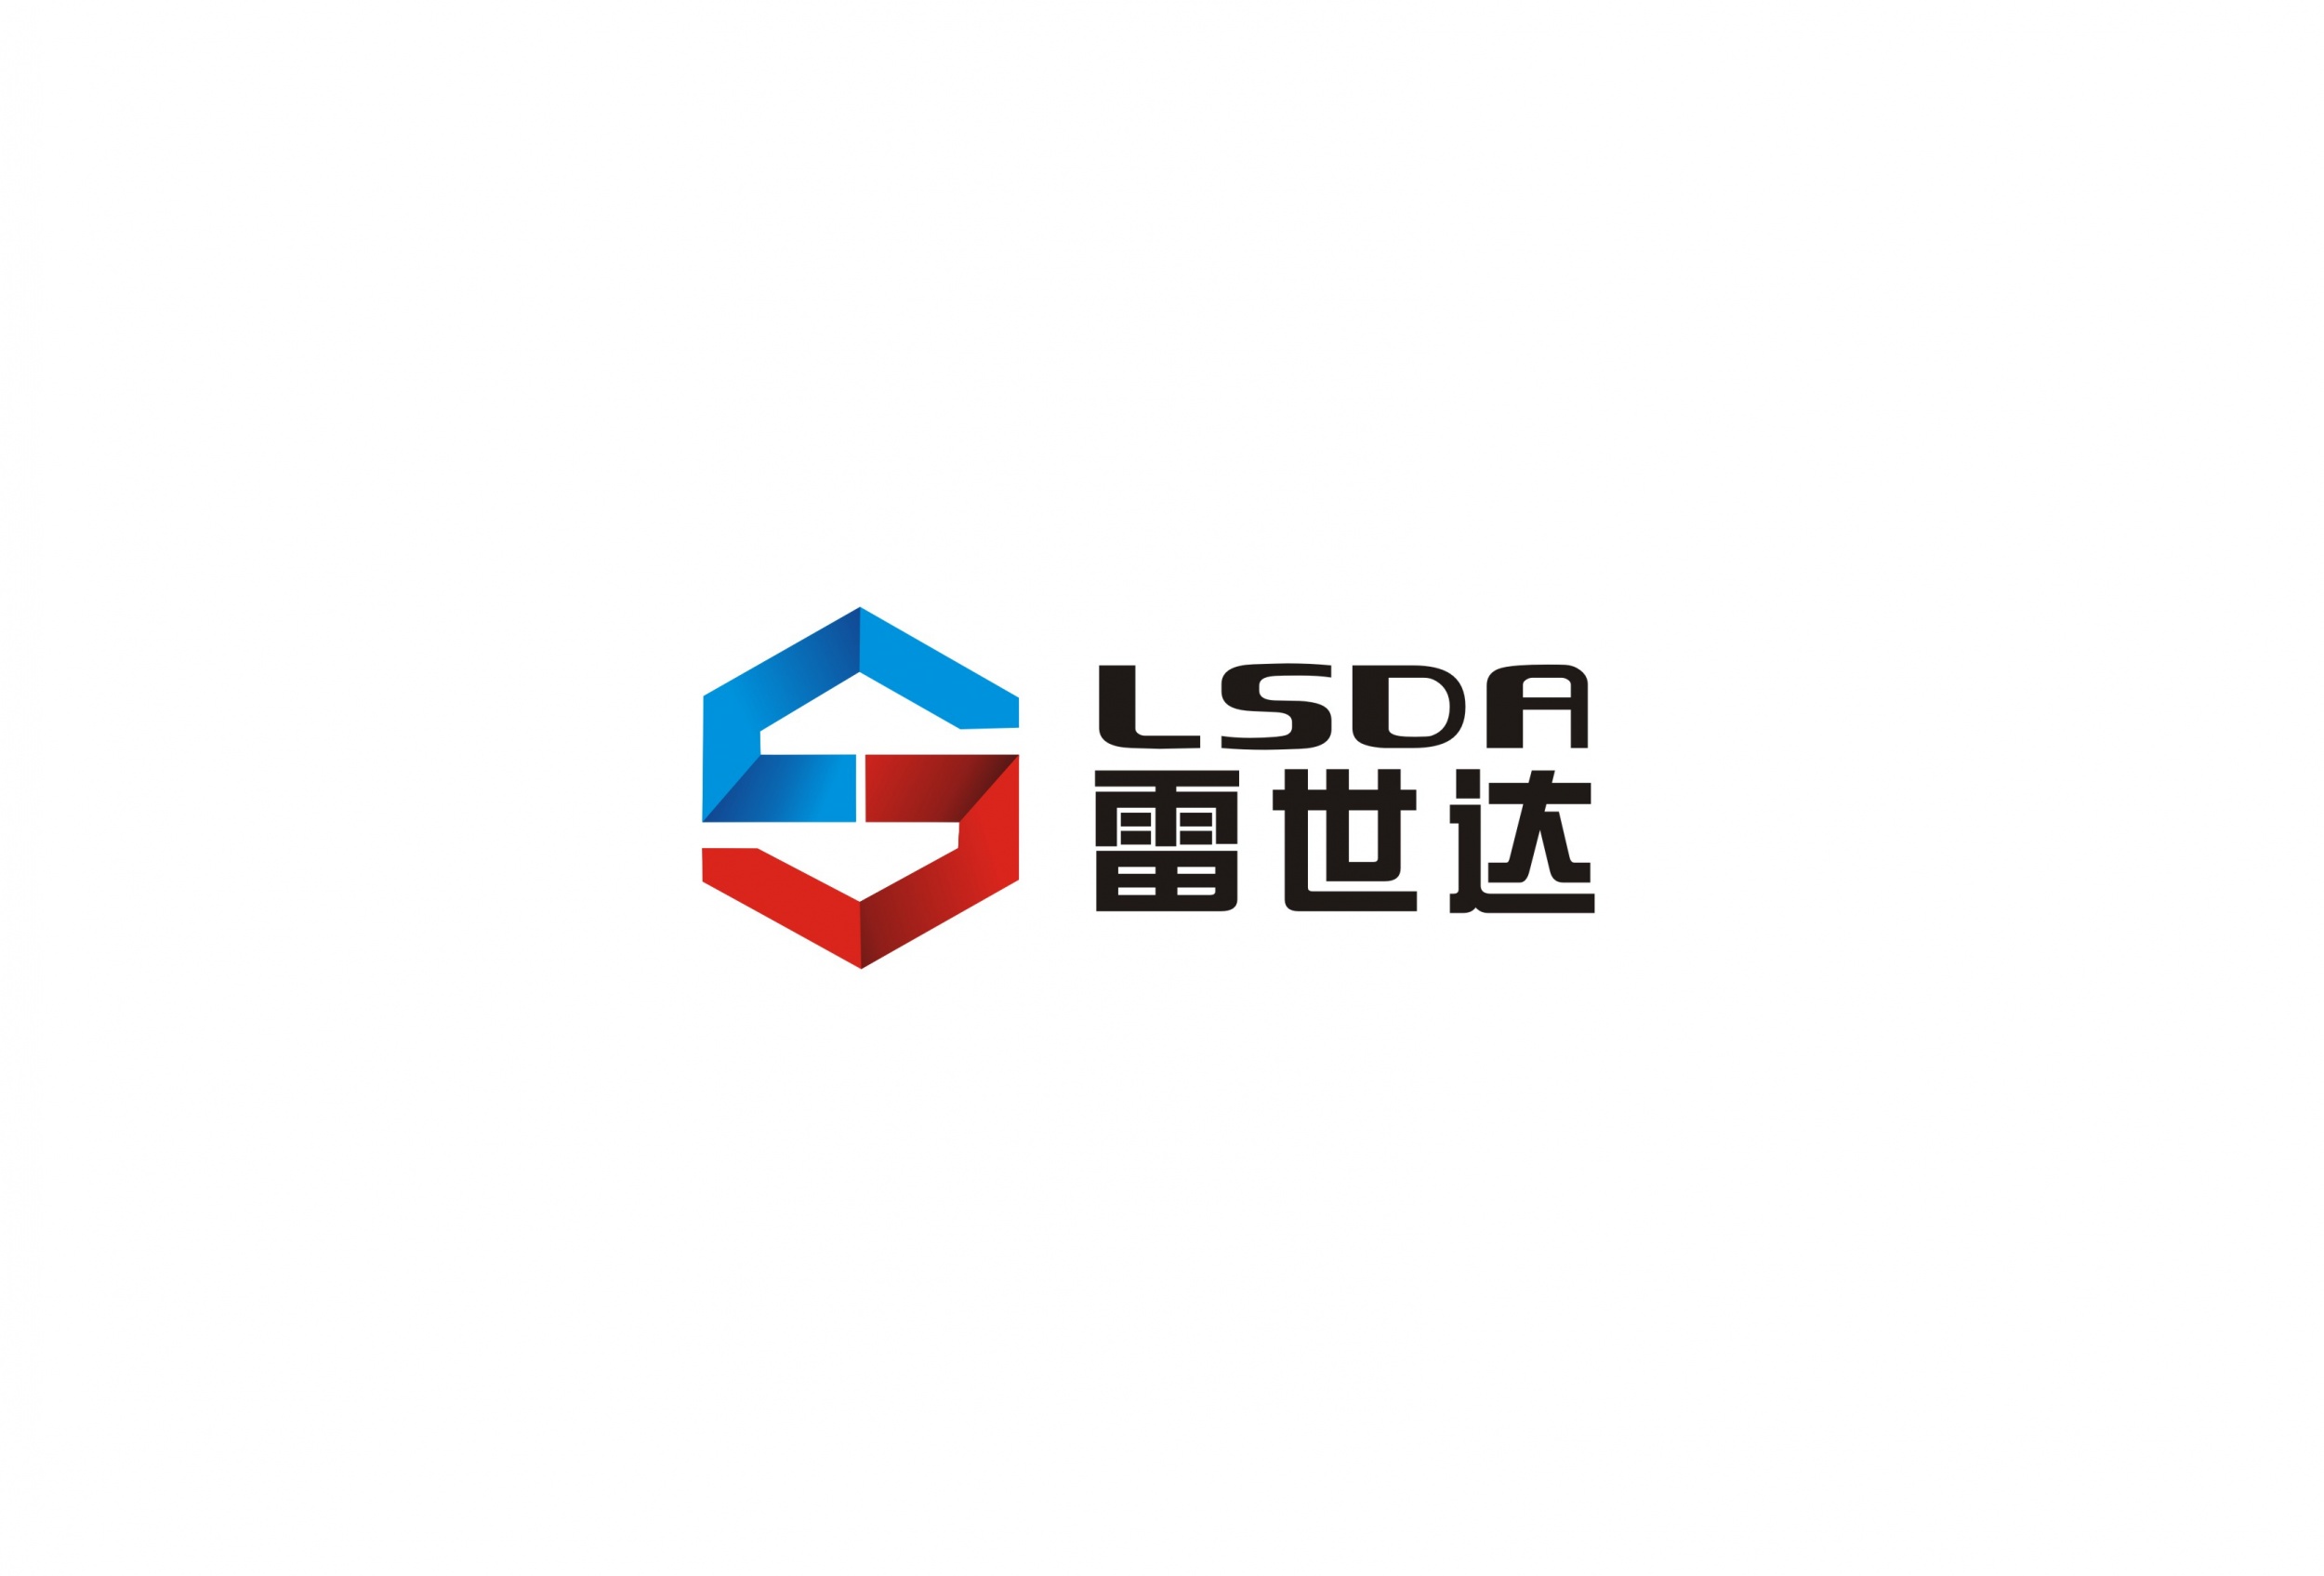 郑州雷世达标志设计,郑州logo设计/vi设计/商标设计/画册包装设计公司